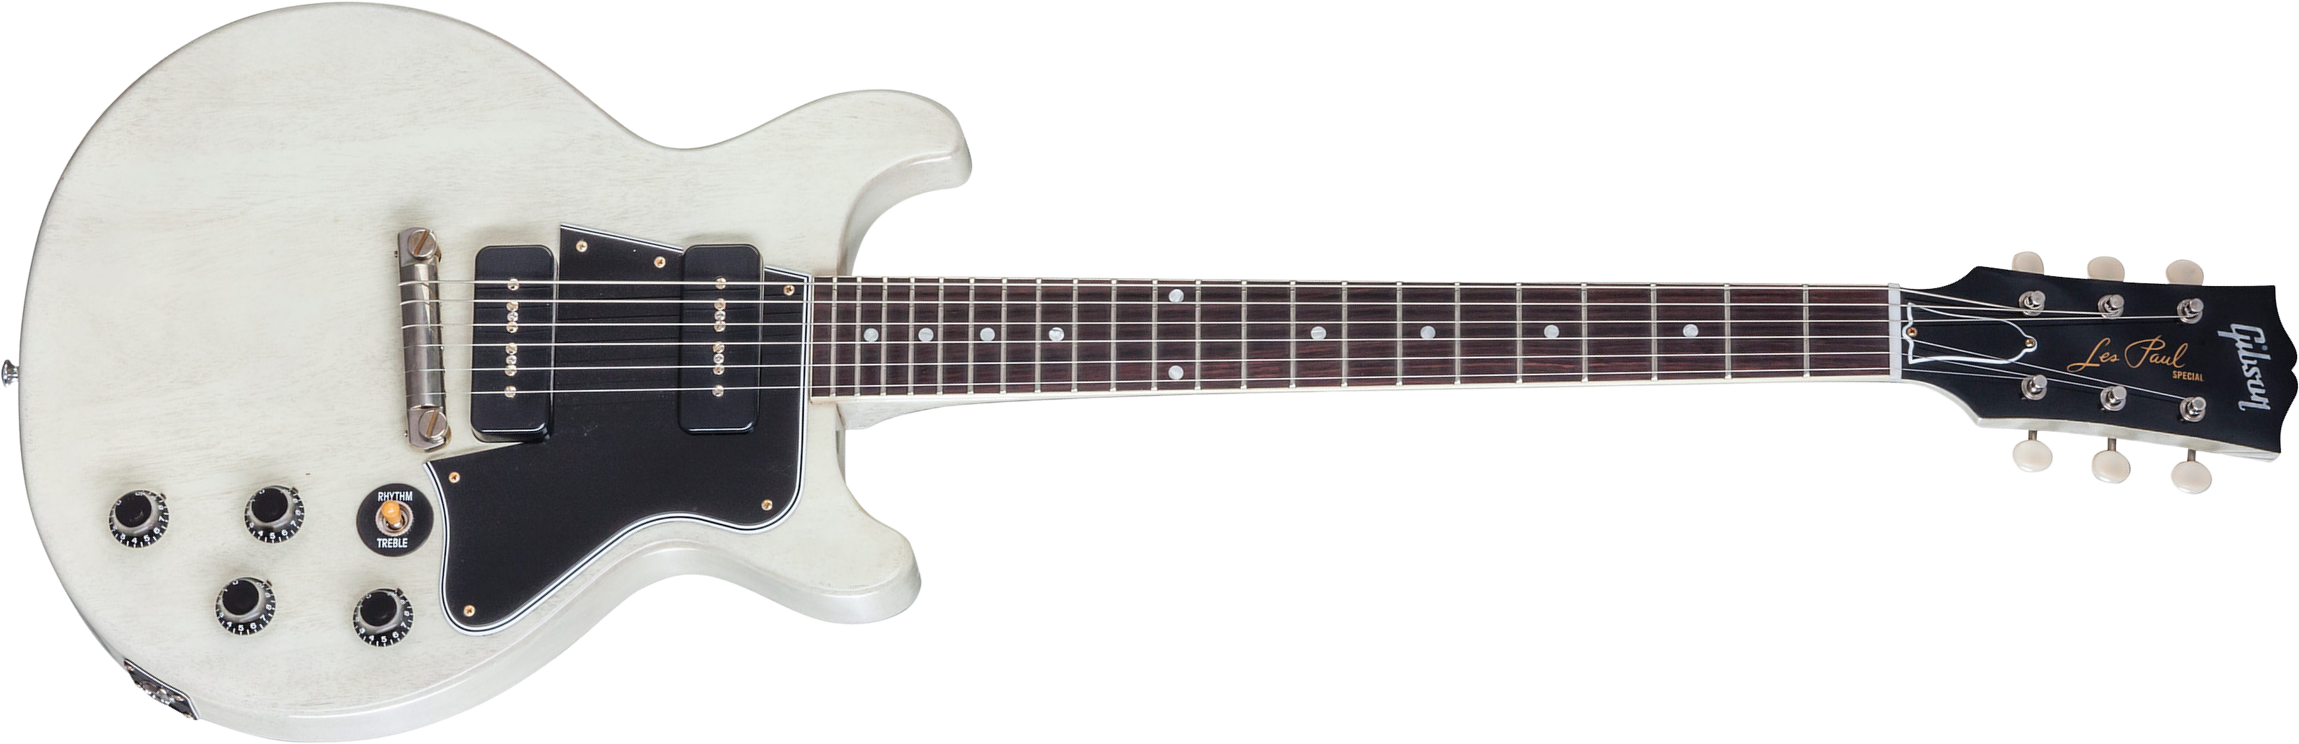 Gibson Custom Shop Les Paul Special Double Cut Nh 2017 - Tv White - Guitarra eléctrica de doble corte - Main picture